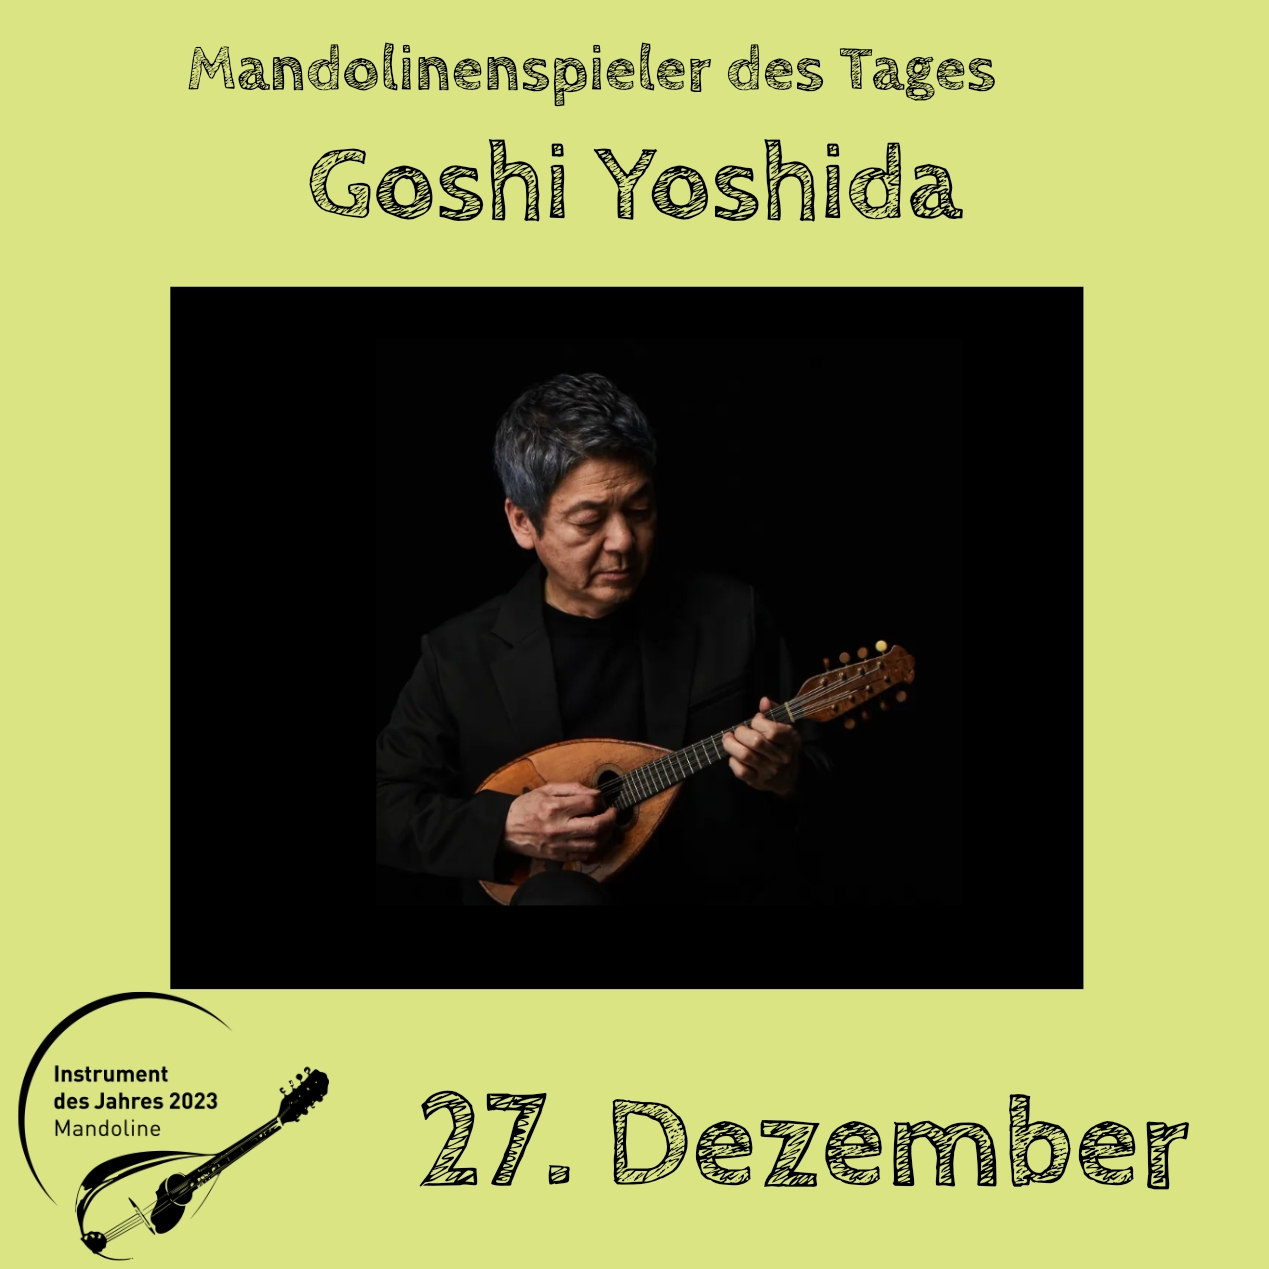 27. Dezember - Goshi Yoshida Instrument des Jahres 2023 Mandolinenspieler Mandolinenspielerin des Tages